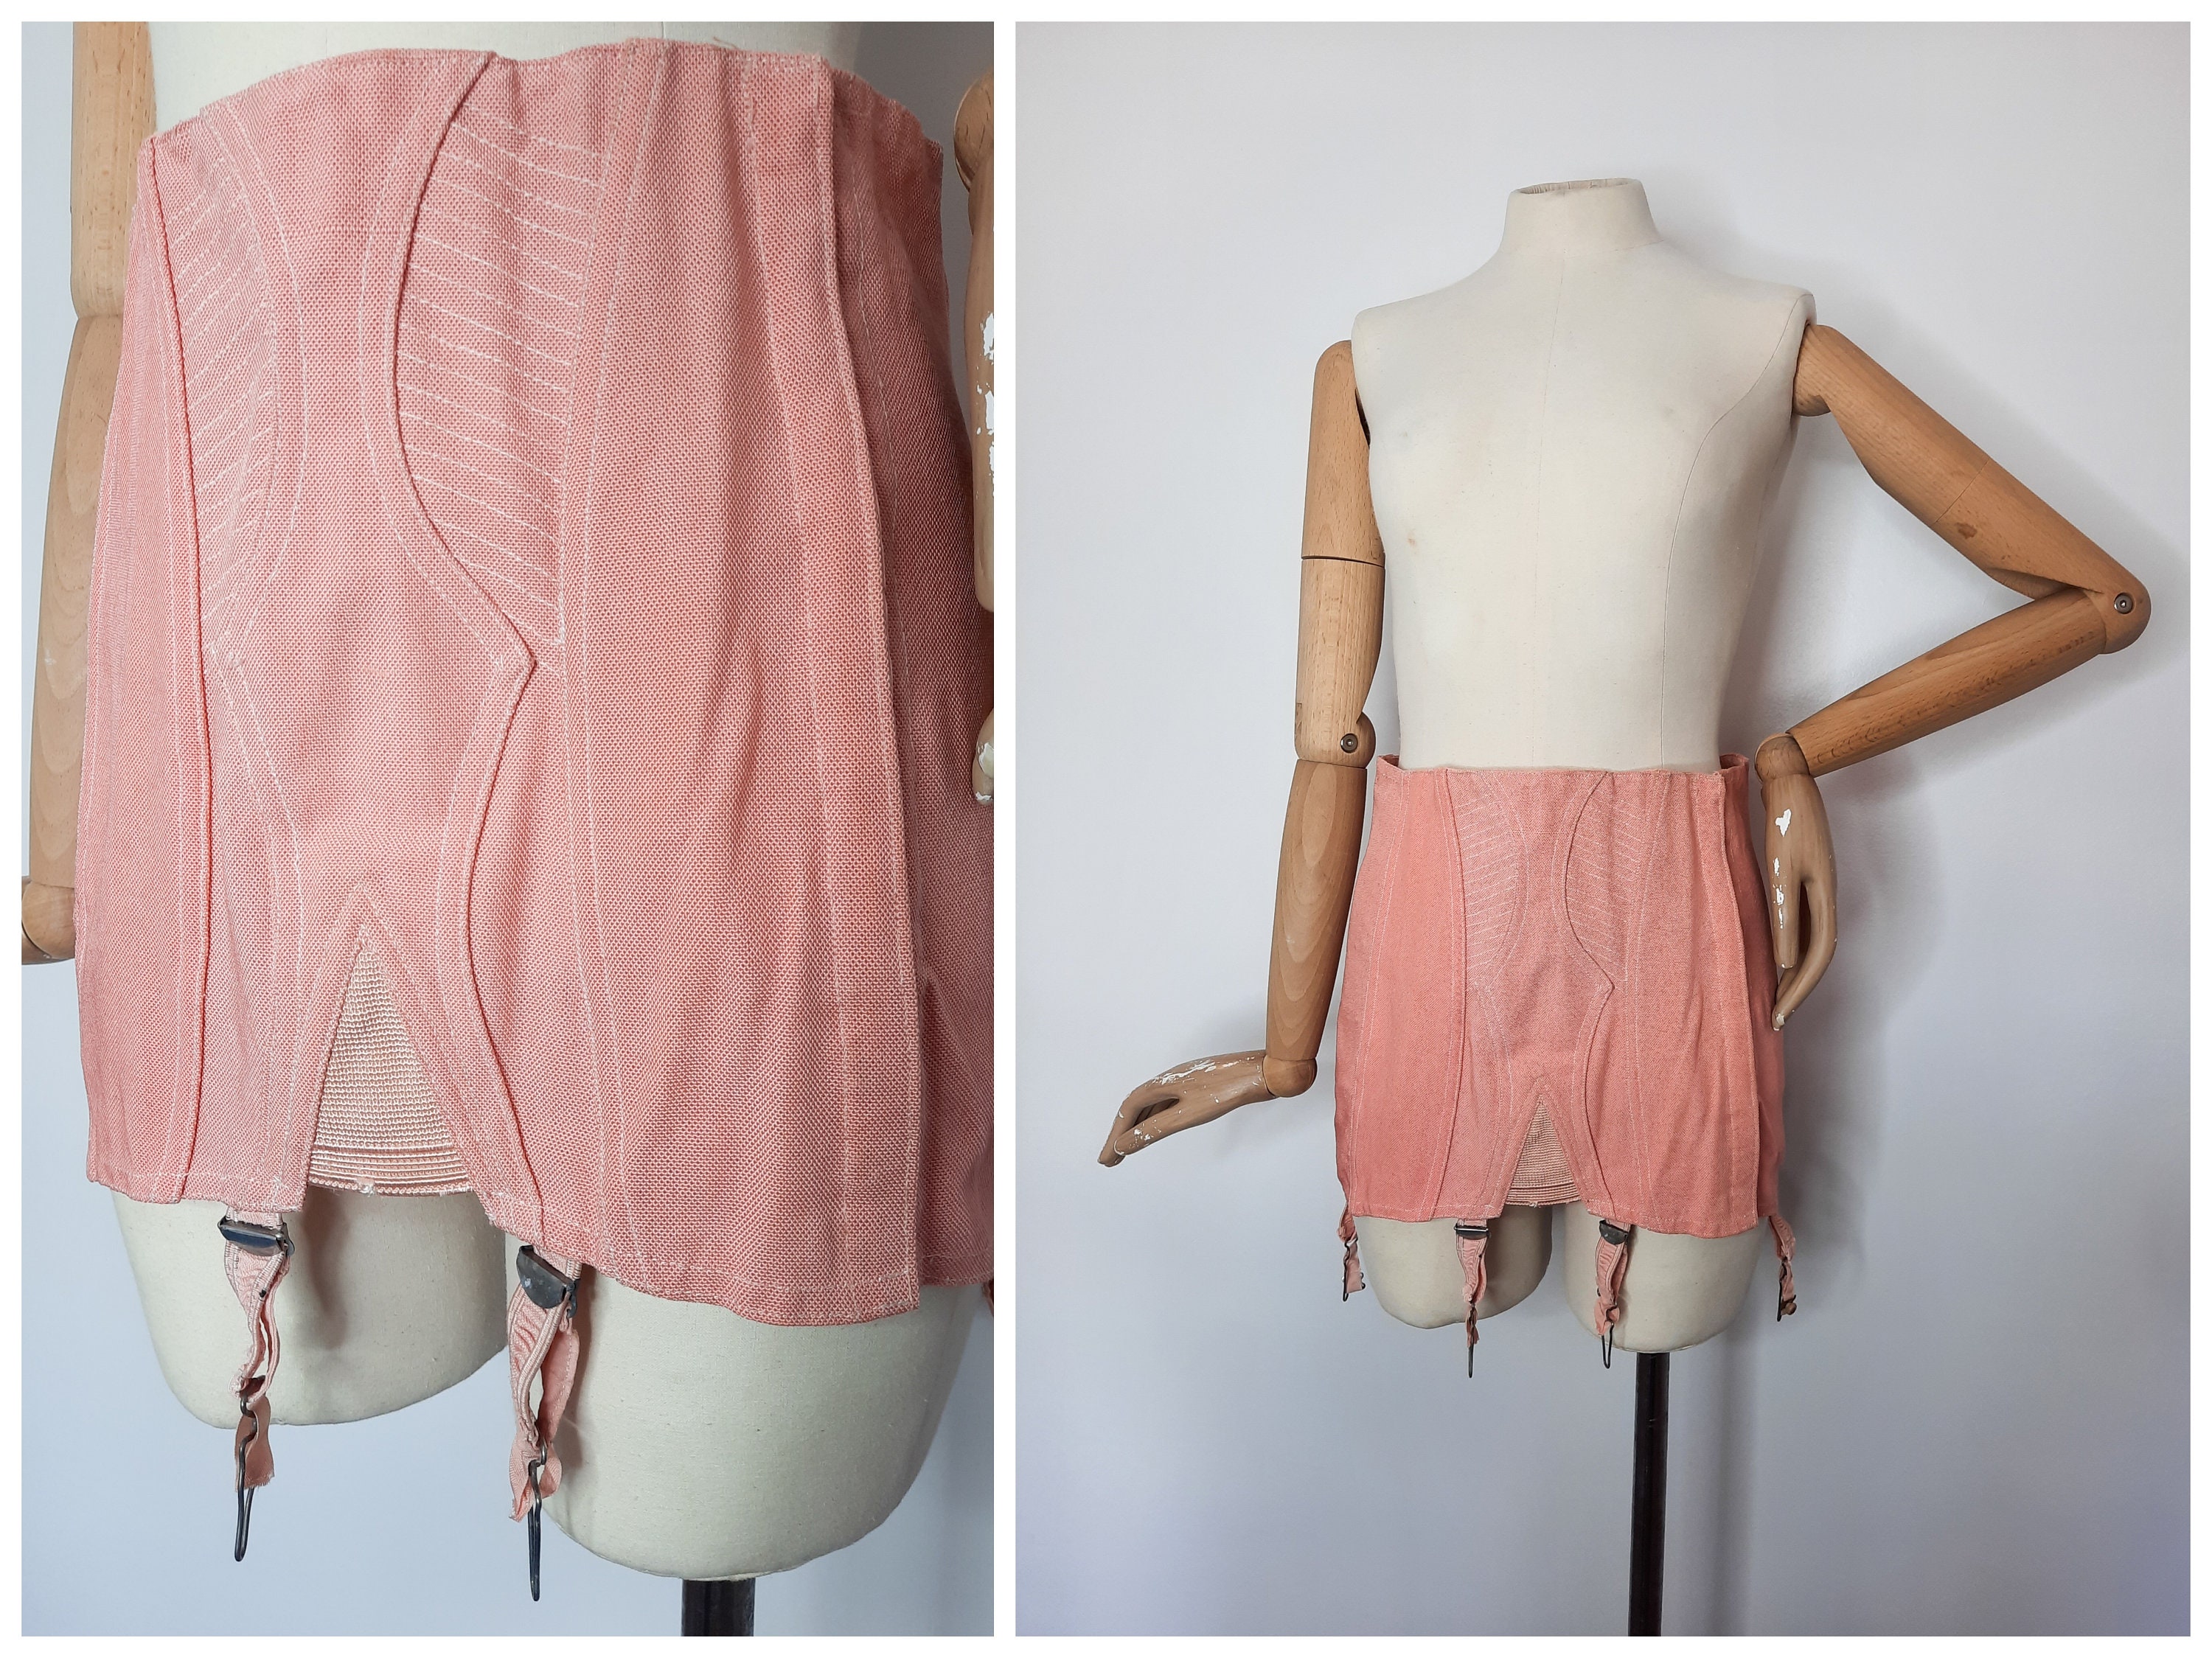 Antique 1940s corset girdle – CARRICKO